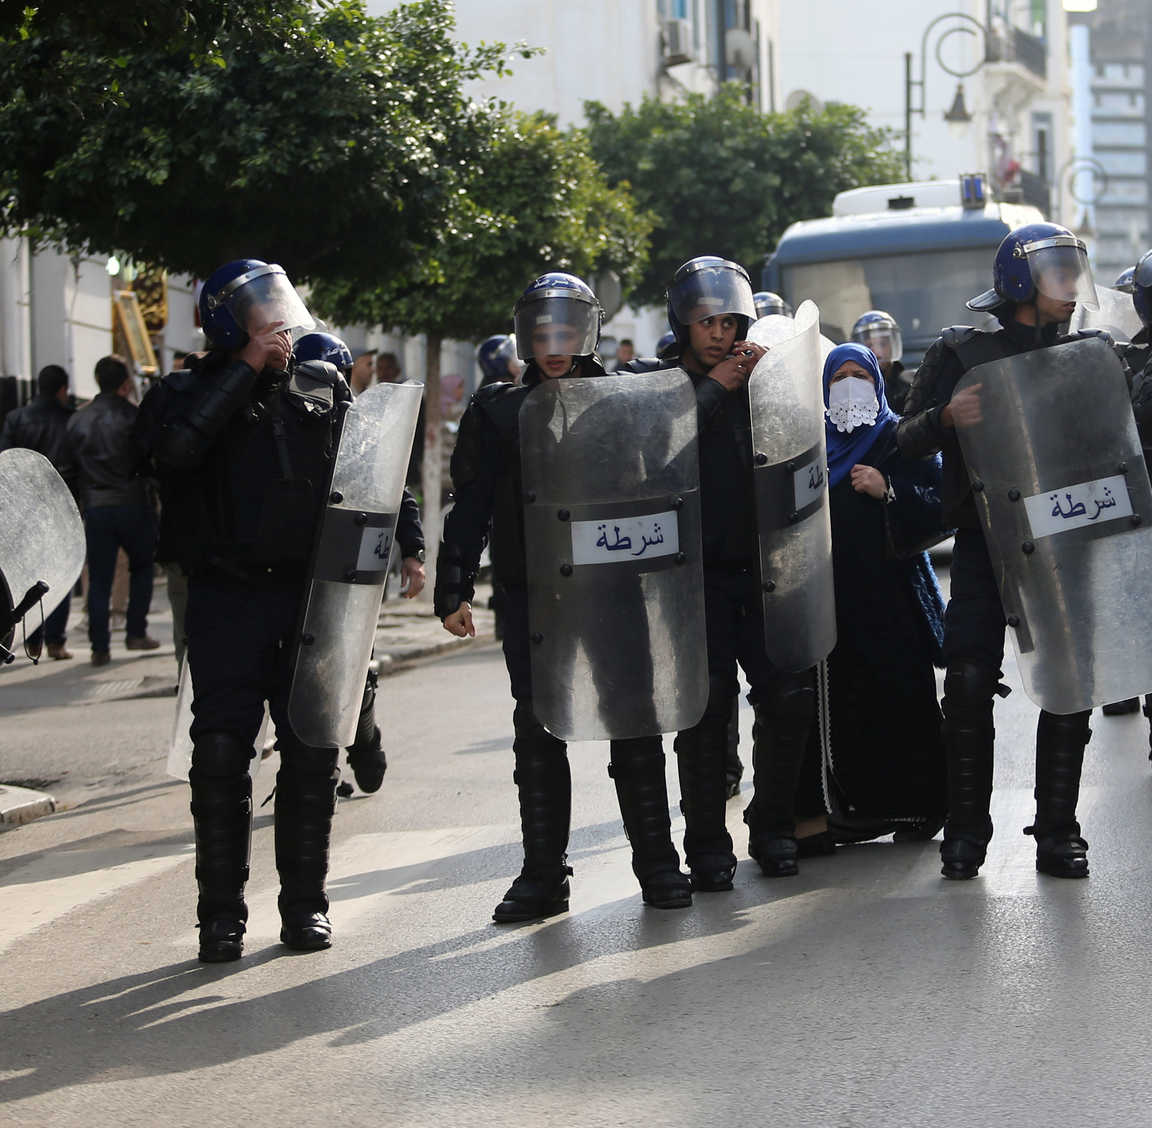 الجزائر: عقوبات رادعة تستهدف “عصابات الأحياء”للقضاء على الظاهرة